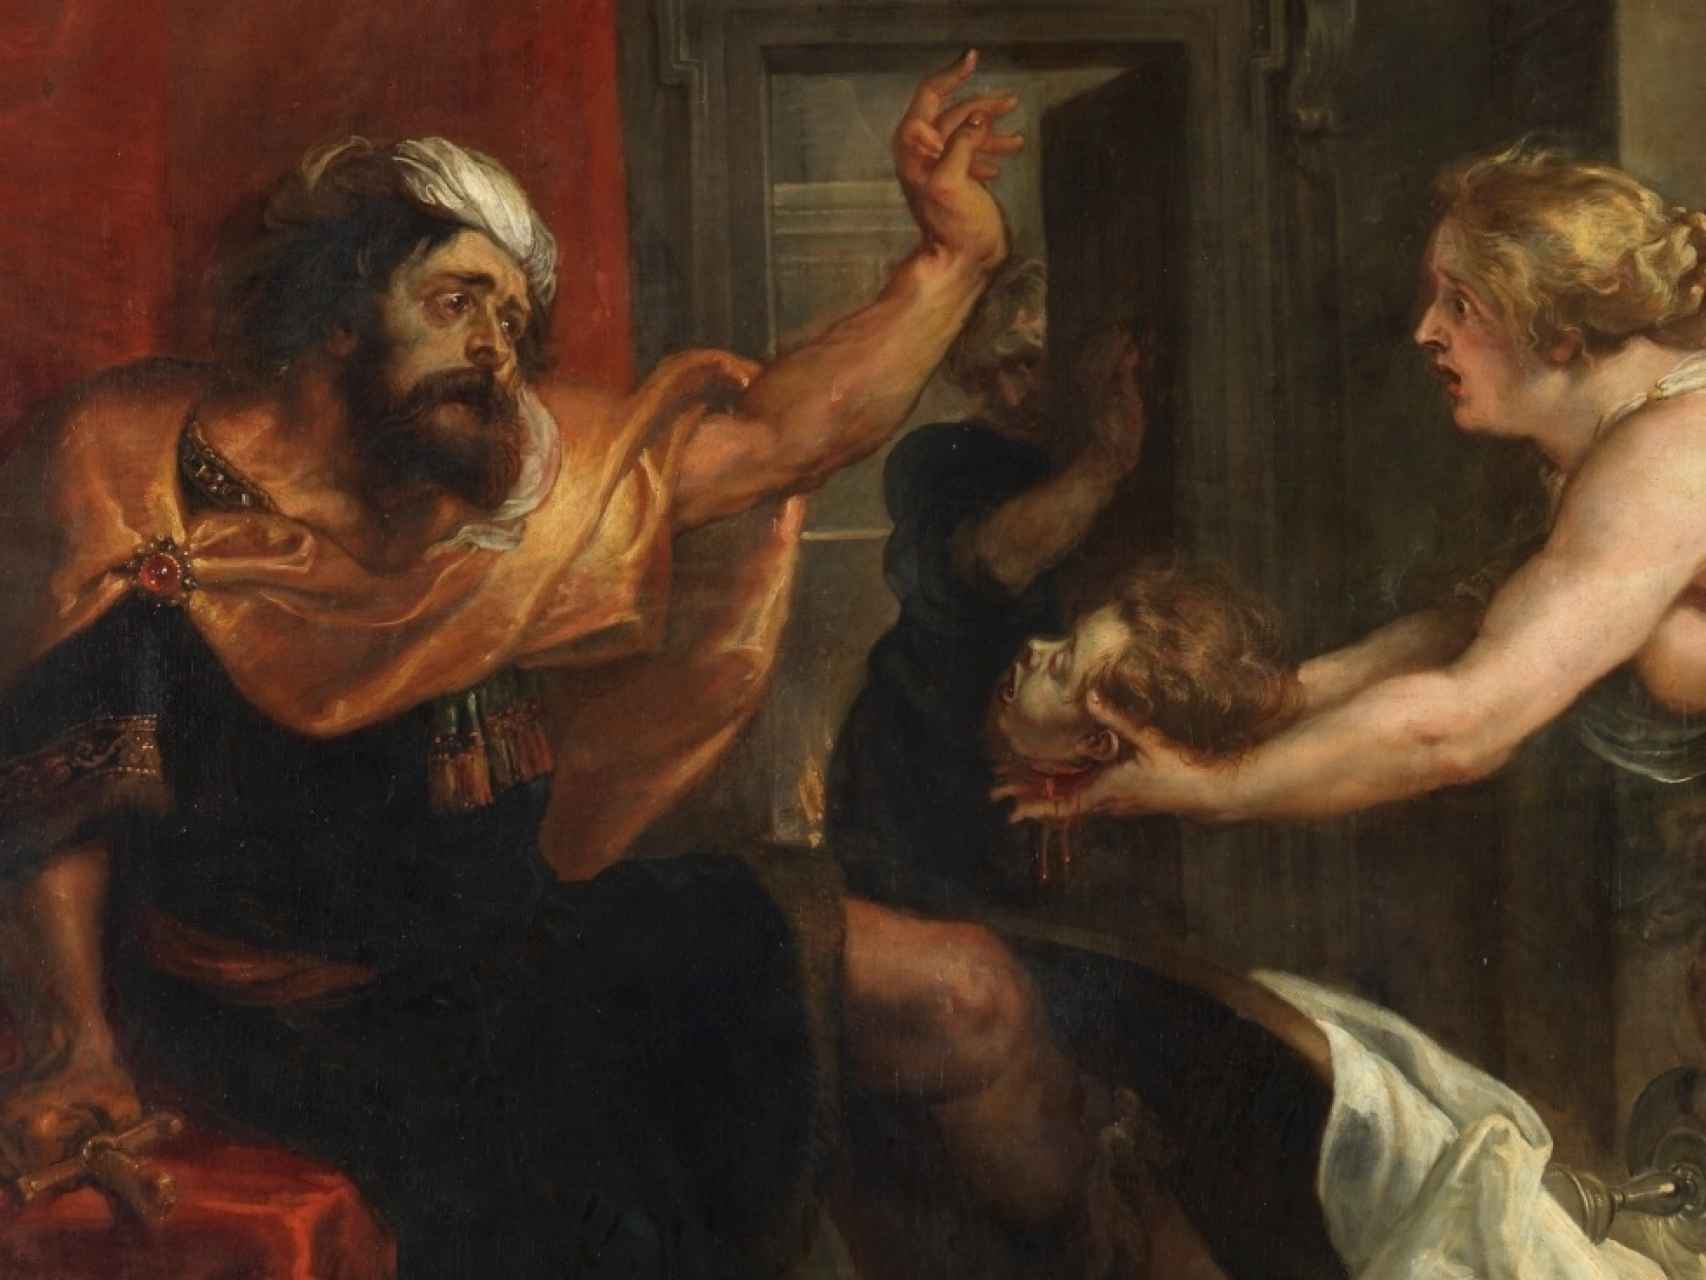 Fragmento de la pintura de Rubens El banquete de Tereo, en el Museo del Prado.